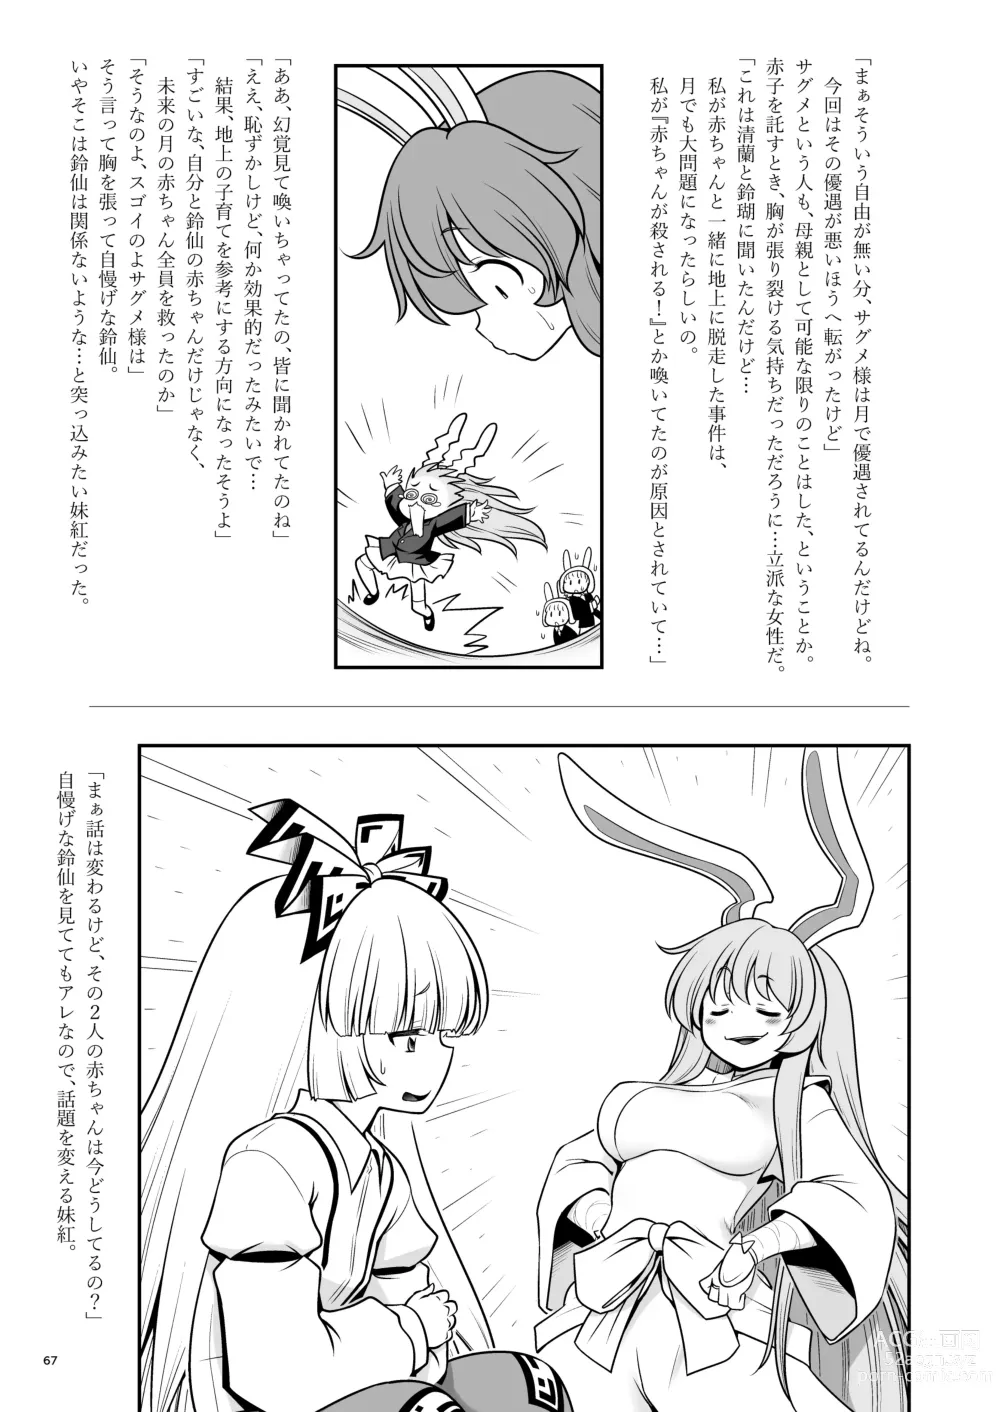 Page 67 of doujinshi Nureru Tsuki no Miyako Kanzenban